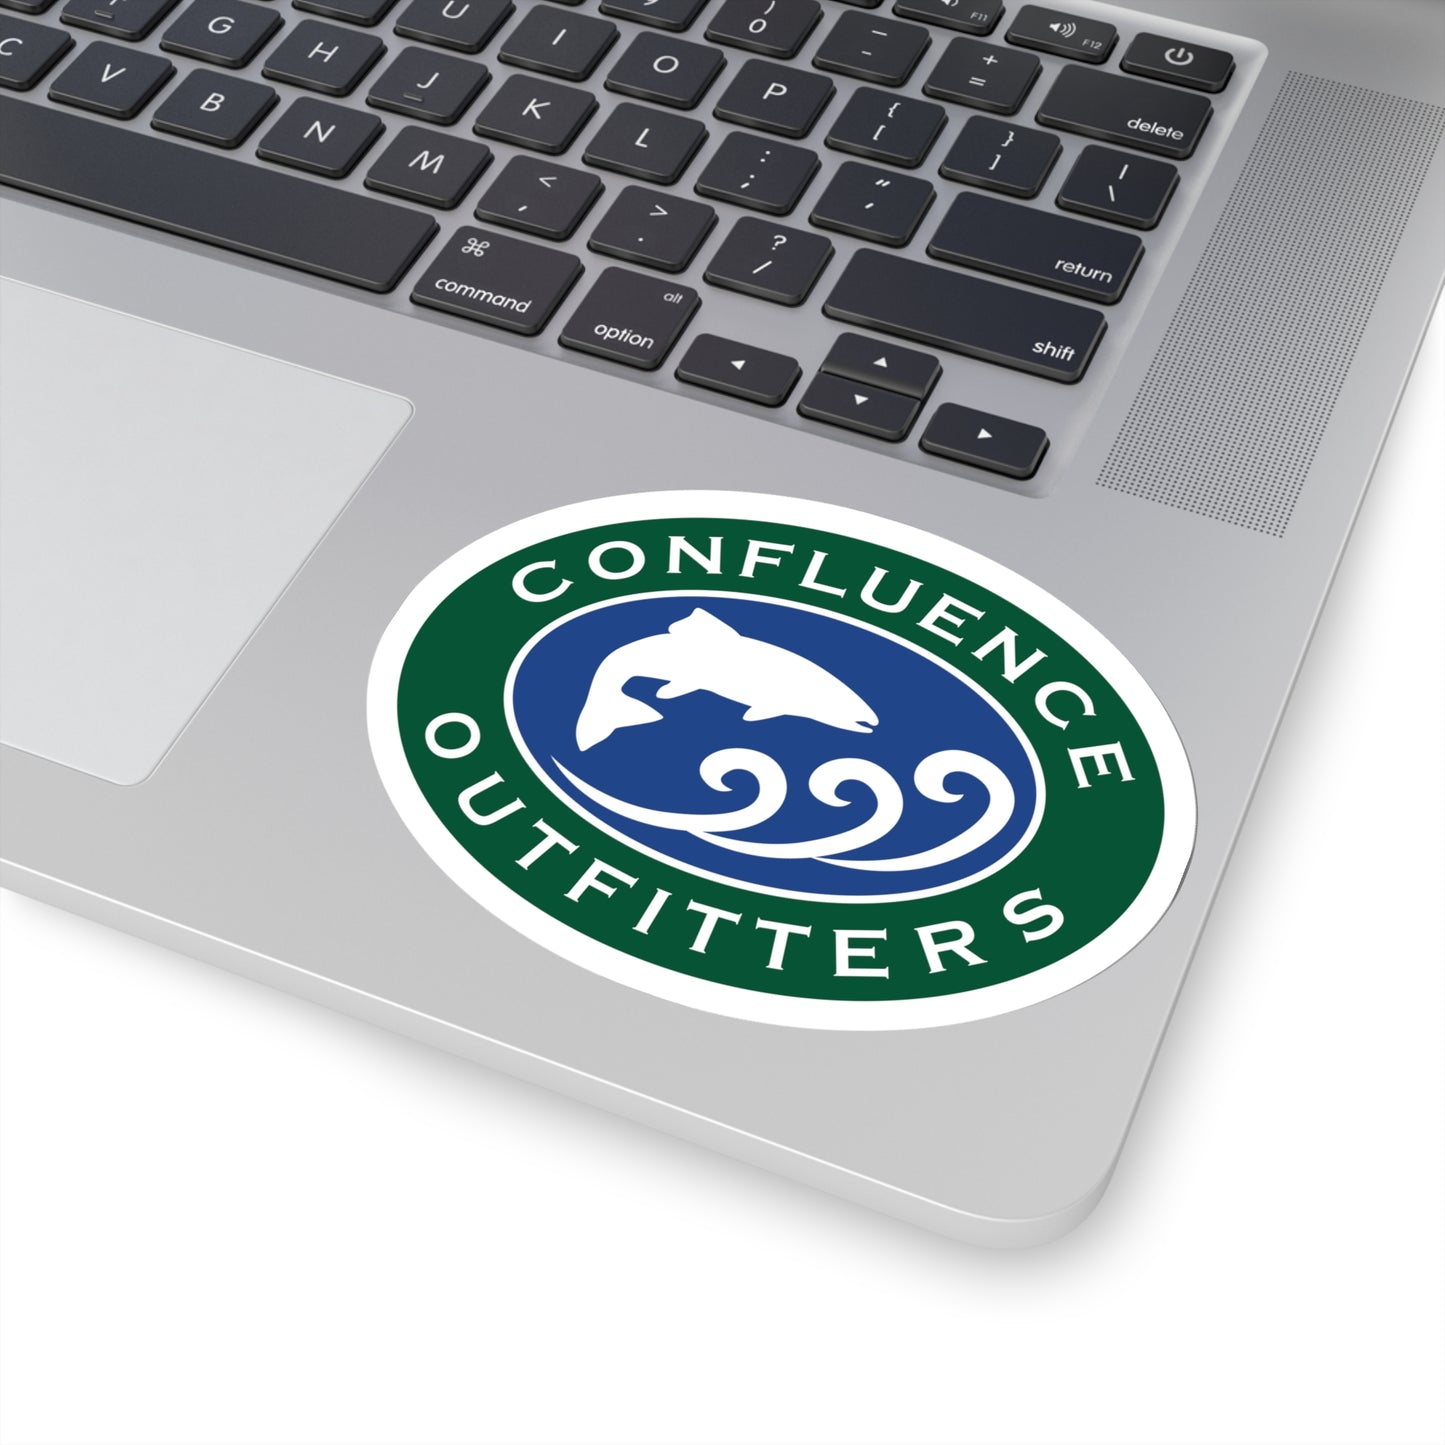 Confluence Logo Sticker